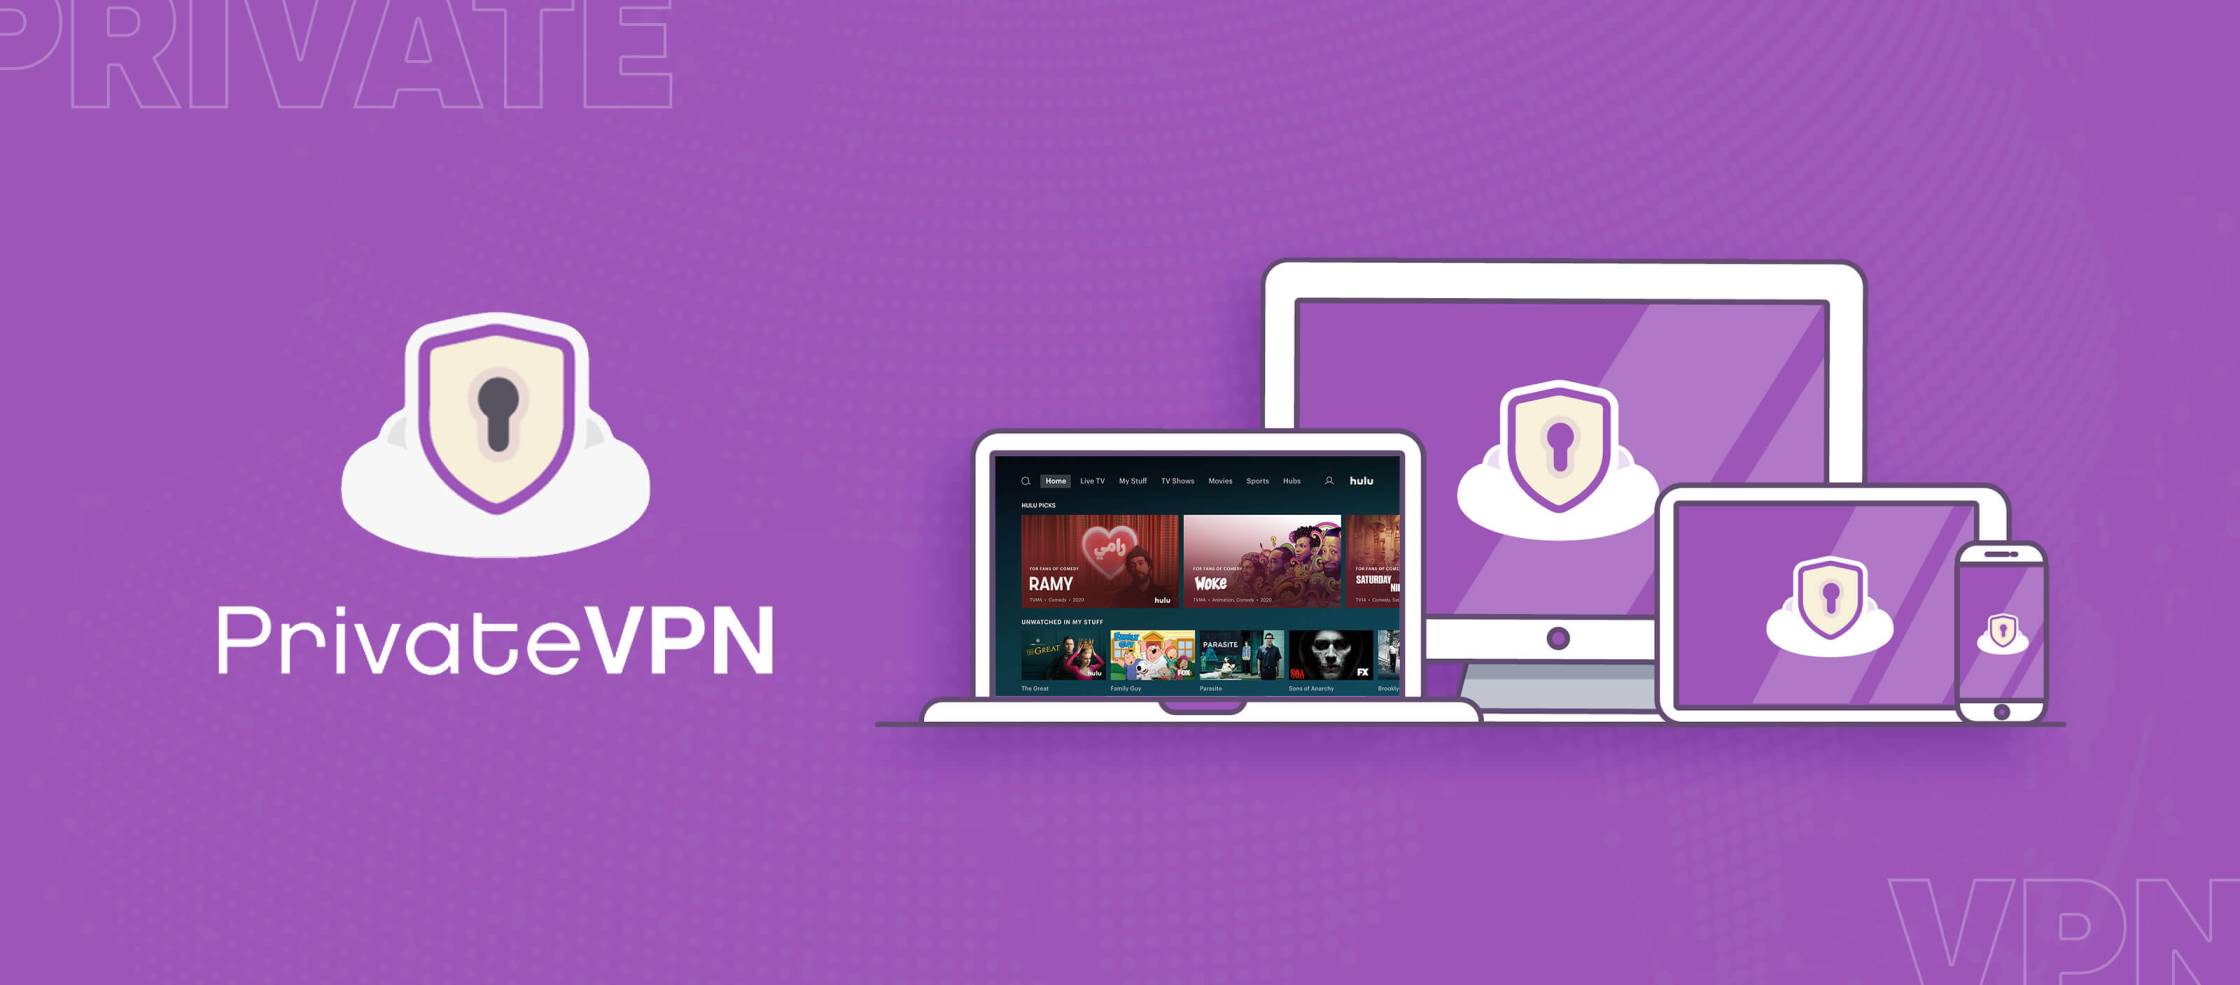  PrivateVPN-Hulu es un servicio de VPN que permite a los usuarios acceder a contenido restringido en Hulu. 